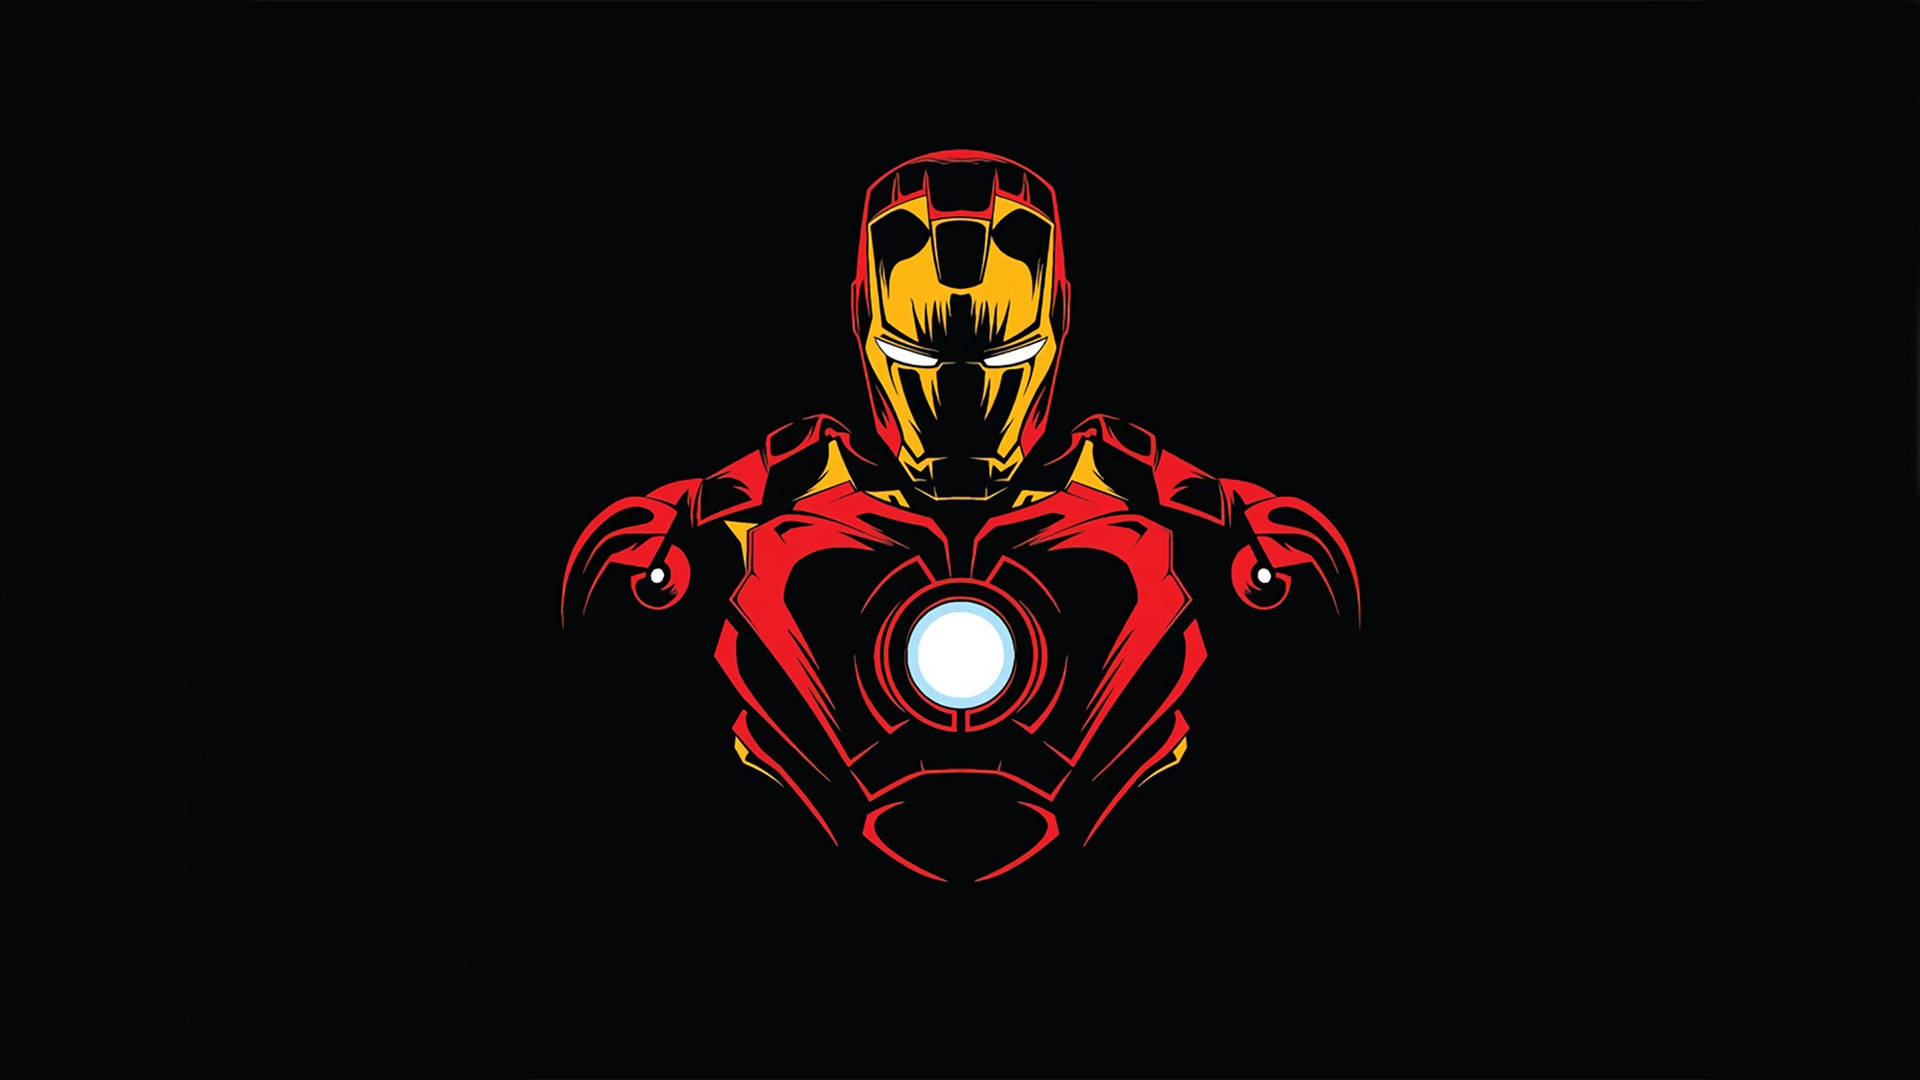 Tecknadritning Av Superhjälten Iron Man Wallpaper